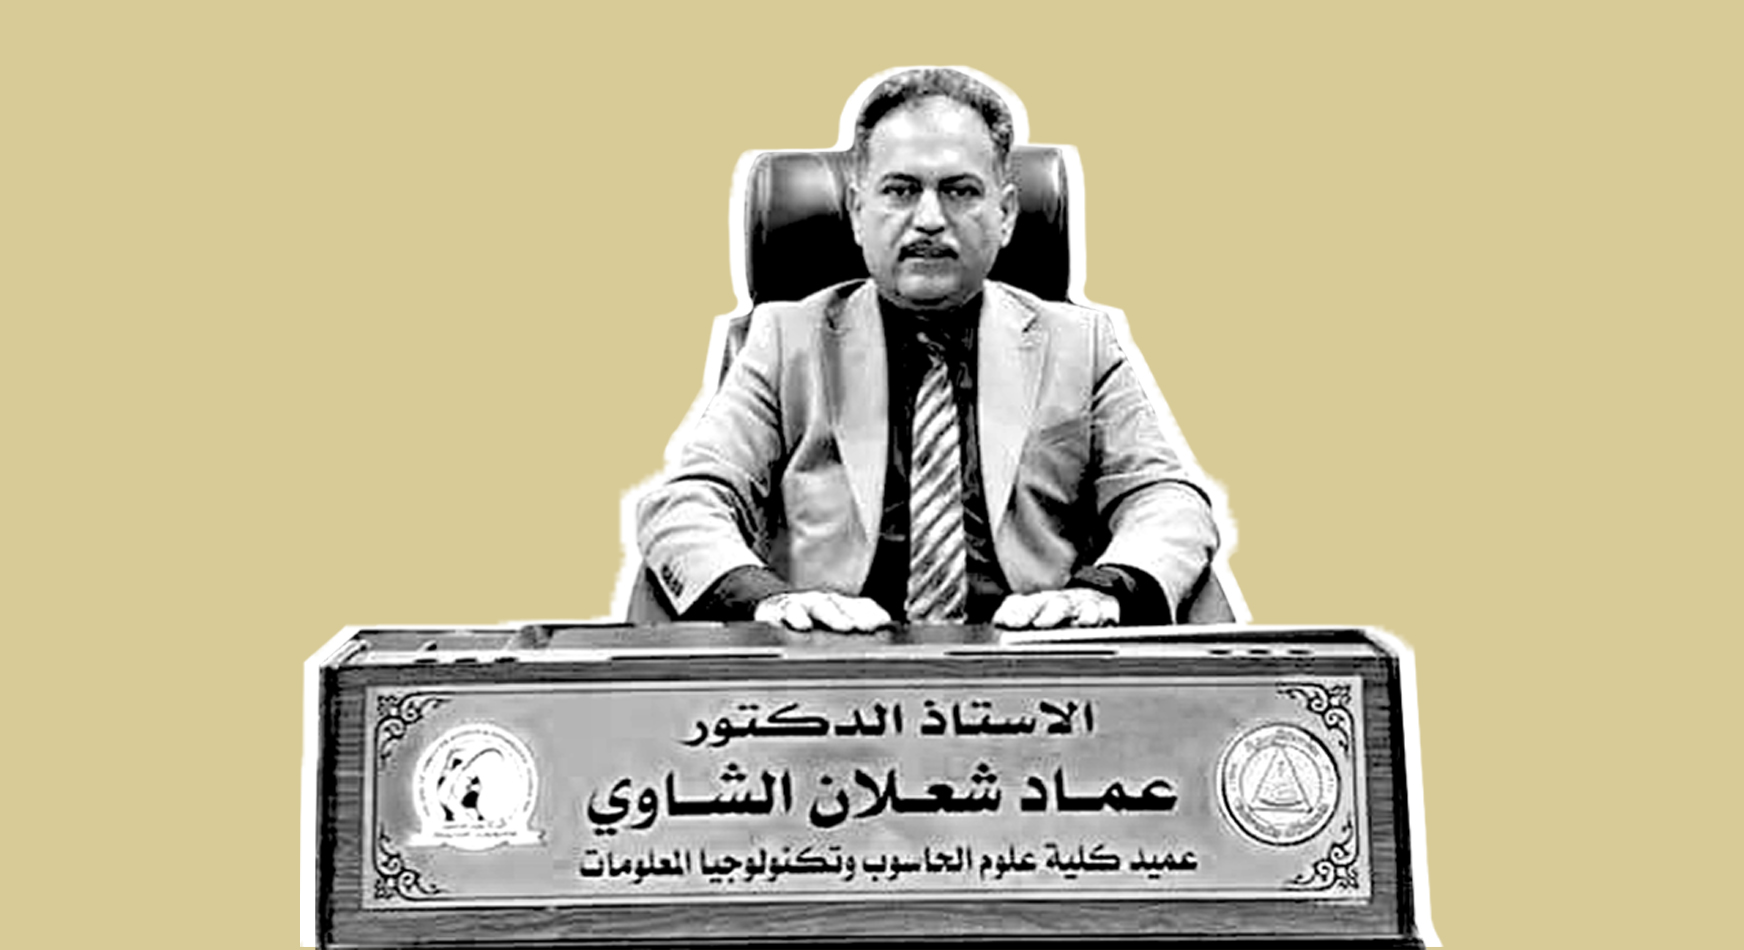 "عماد الشاوي متحرش"... عميد كليّة يستغل نفوذه للتحرش بطالبات وابتزازهنّ